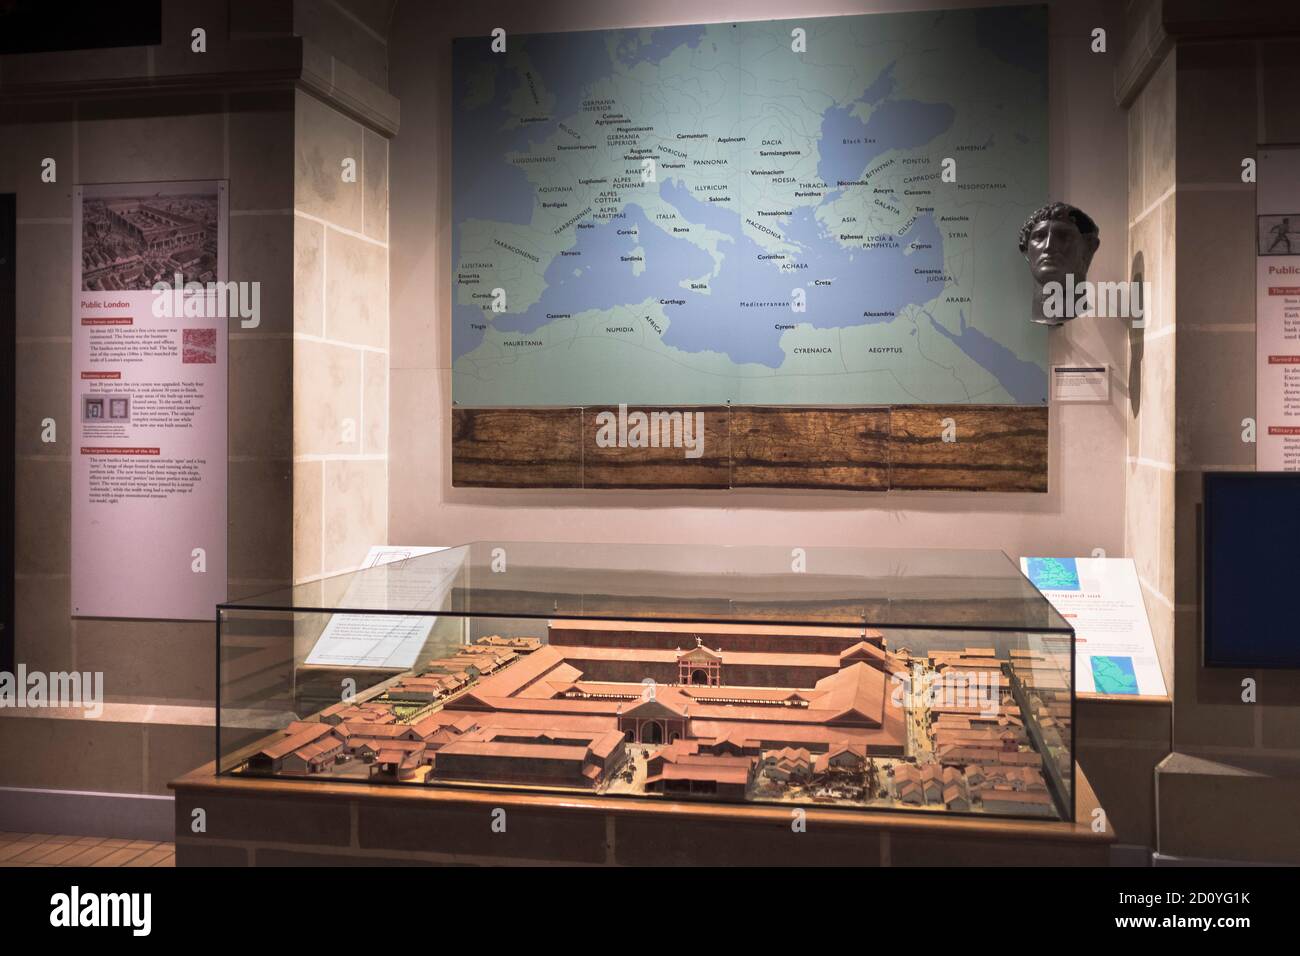 dh MUSEUM OF LONDON LONDRA Roman London mostra interni modello mostra inghilterra regno unito Foto Stock